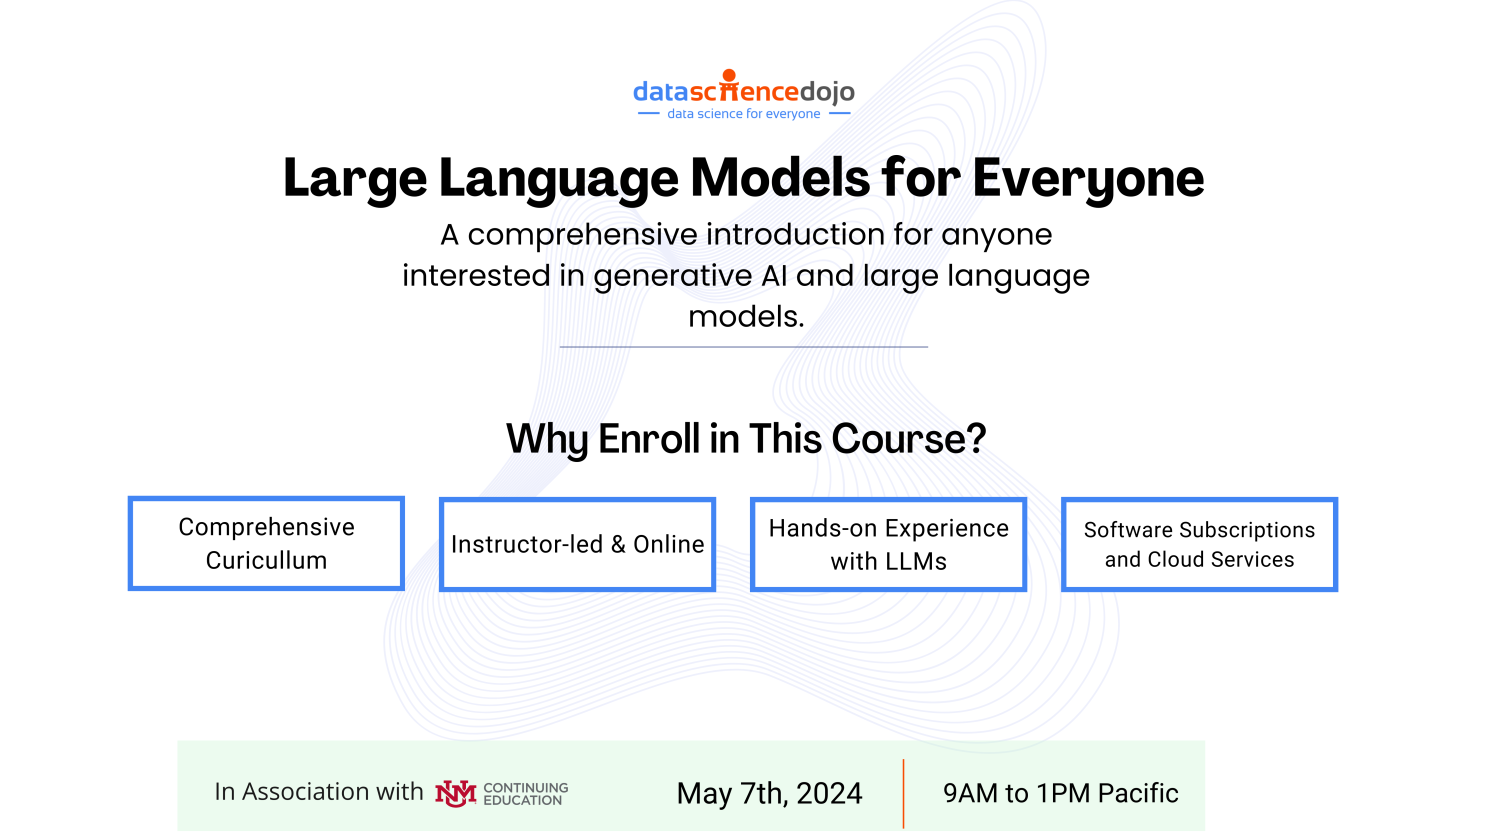 Large Language Models Course Online